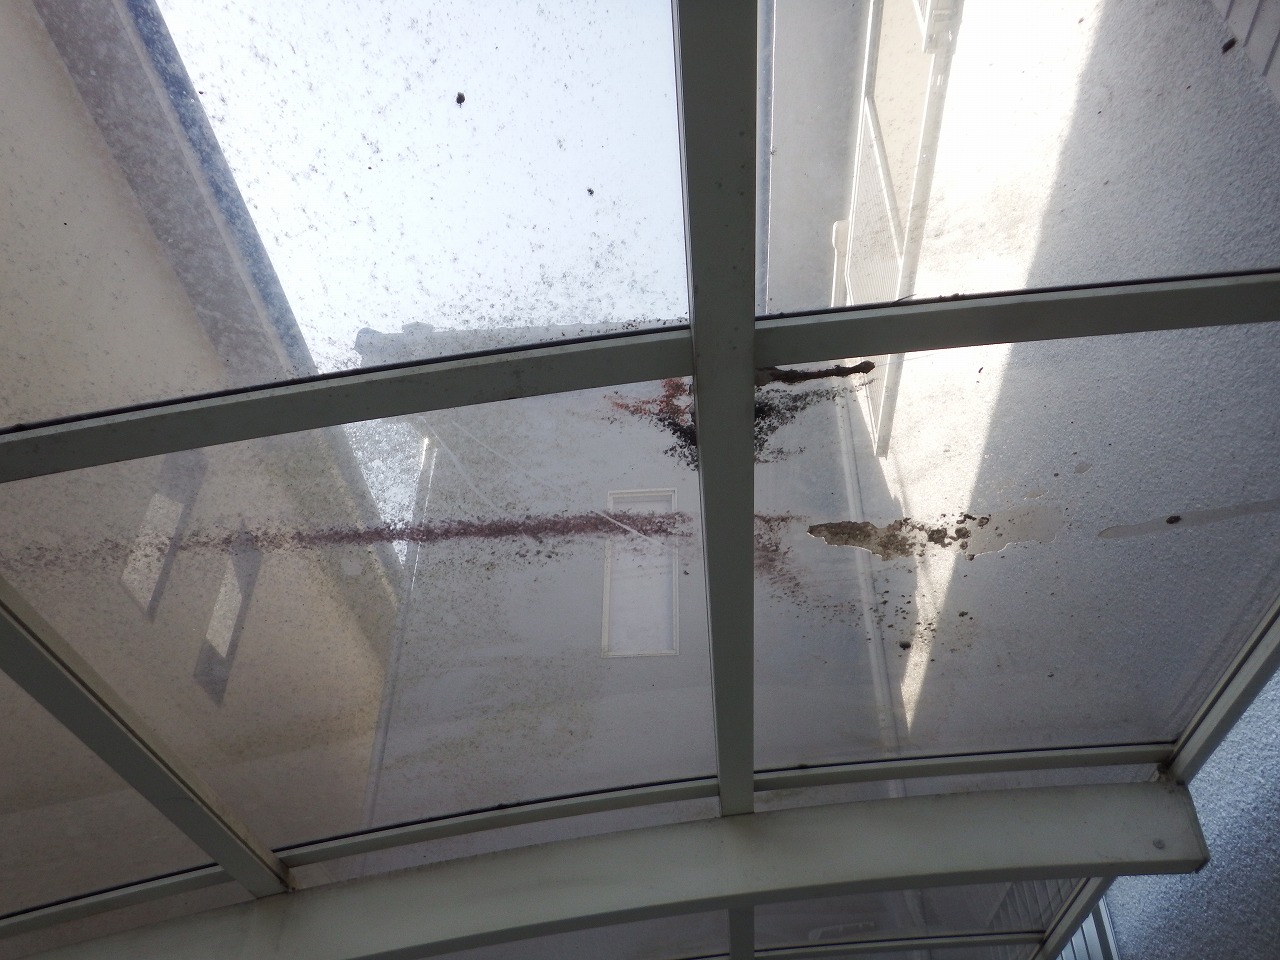 奈良市出屋敷町で雨漏りのカーポート屋根の平板と押さえ金具の再調整